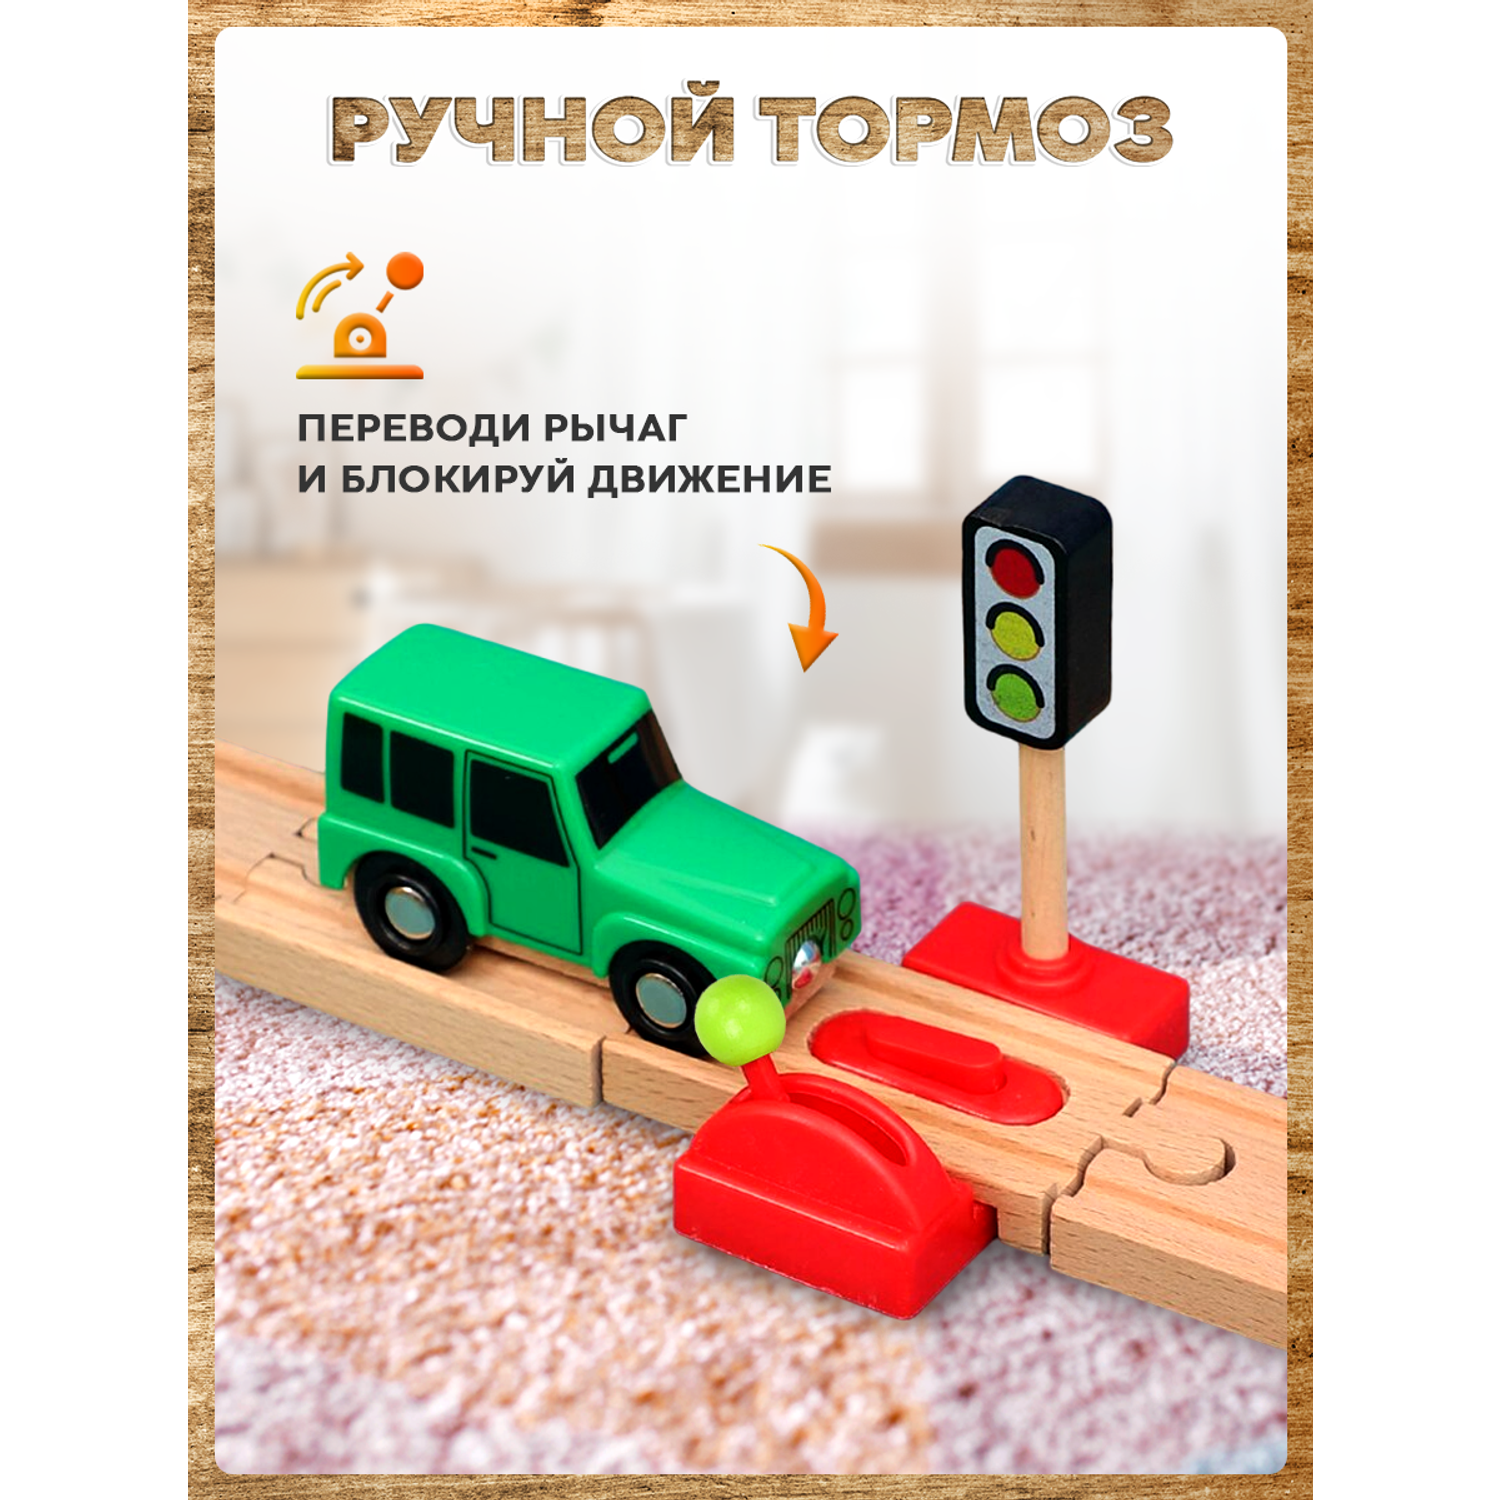 Светофор и переезд А.Паровозиков с механическим тормозом для деревянной железной дороги АП/ПЛ-00012 - фото 3